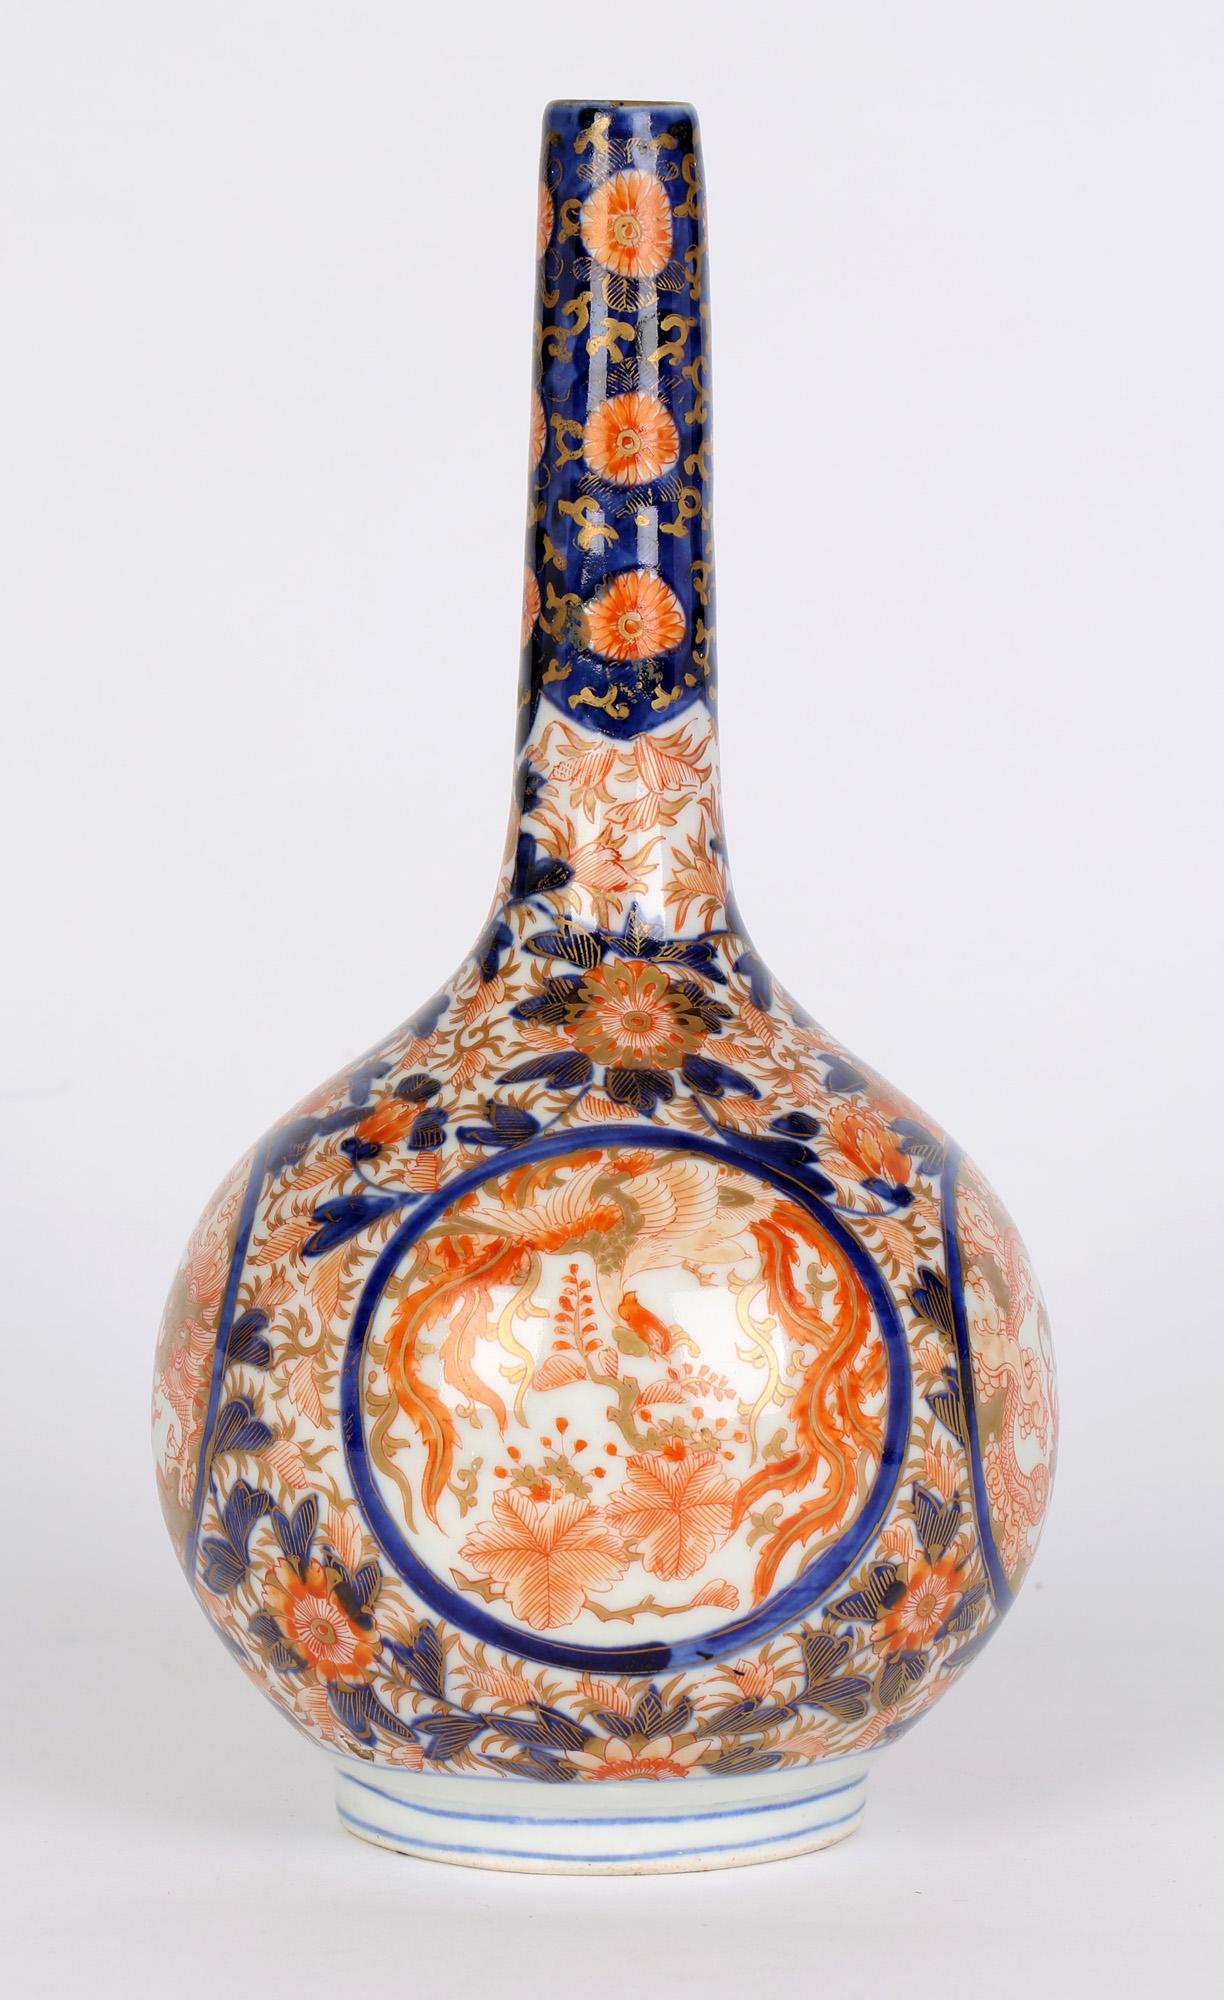 19th Century Japanese Imari Porcelain Bottle Vase with Dragons and Ho Ho Birds